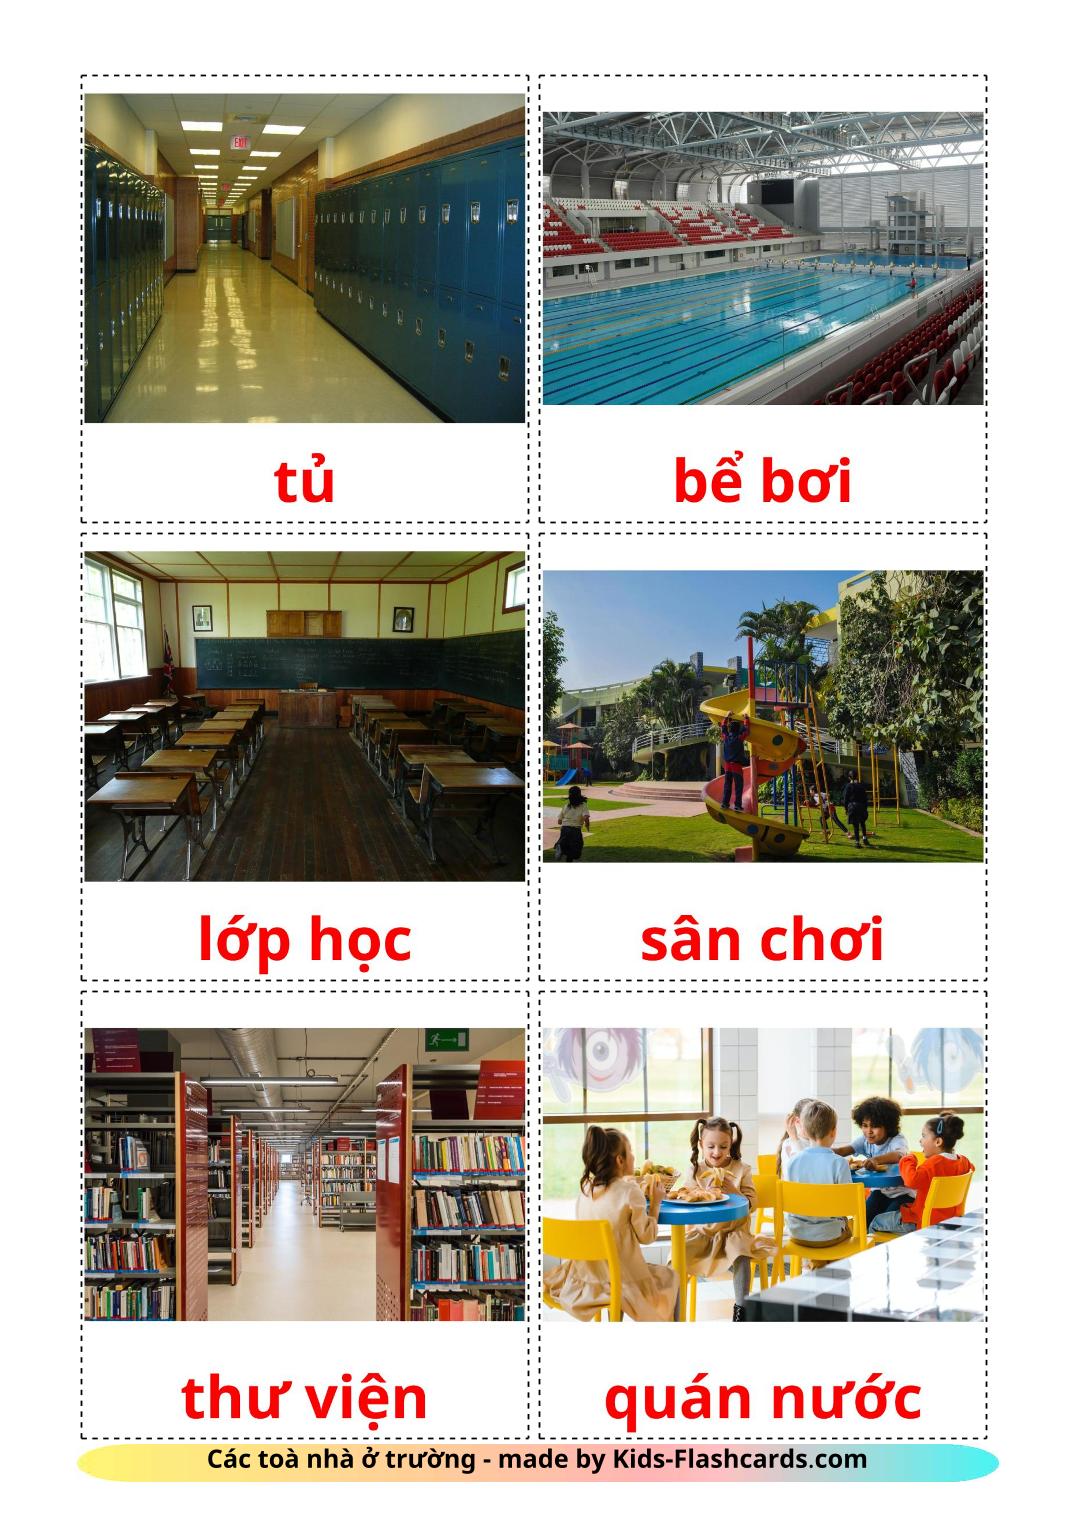 Edificio scolastico - 17 flashcards vietnamita stampabili gratuitamente